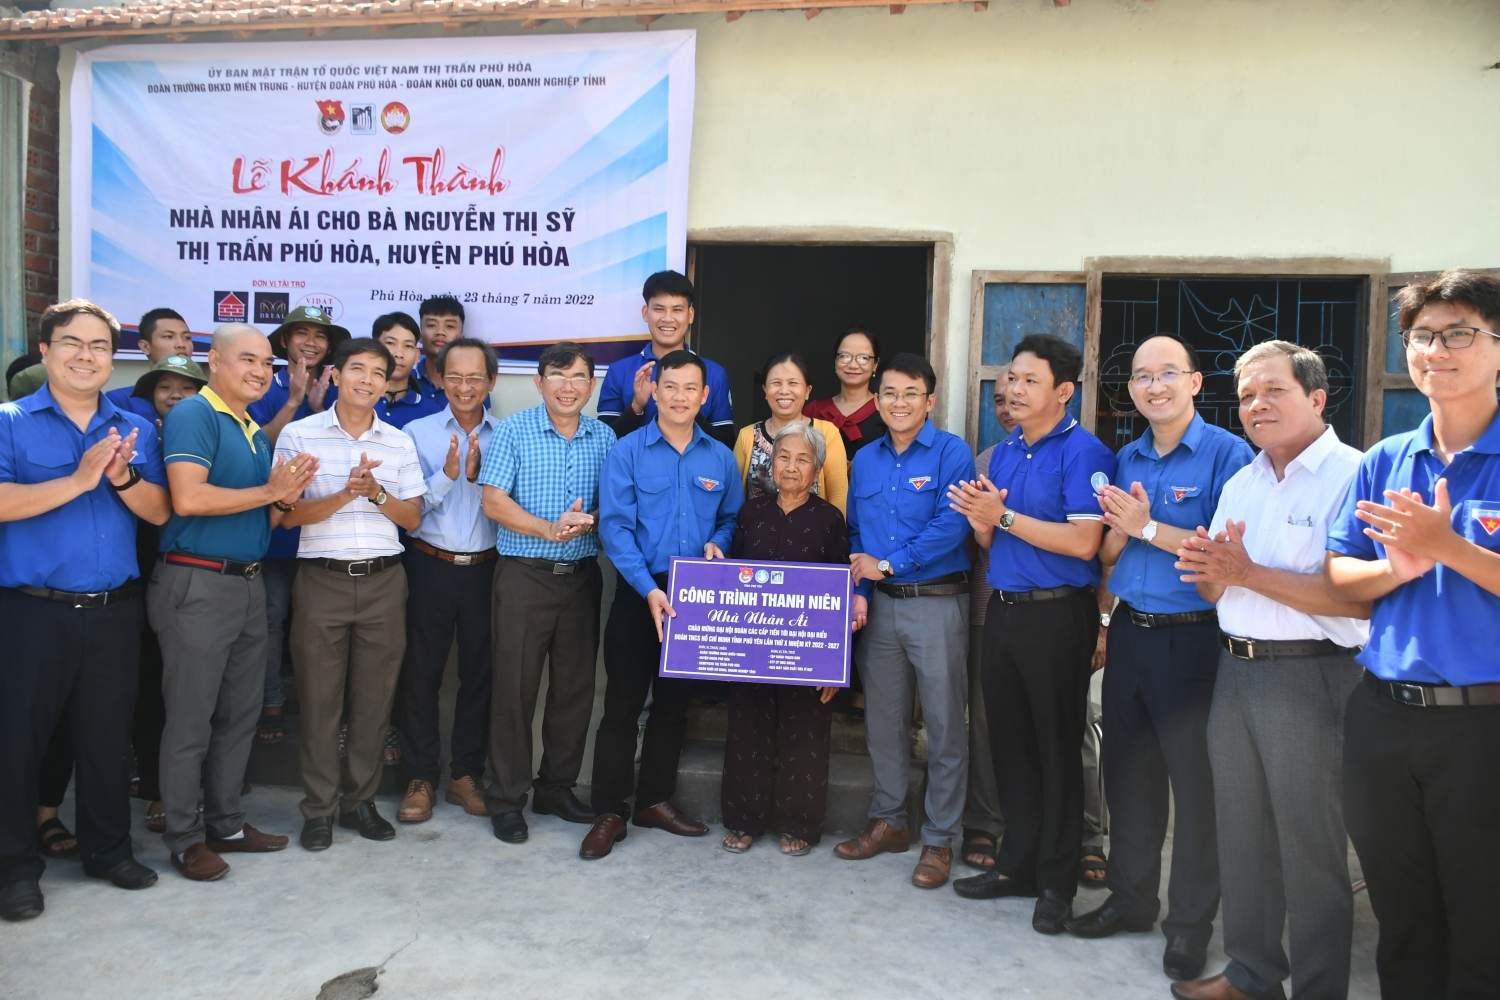 Đoàn khánh thành và bàn giao công trình “Sửa chữa nhà” cho cụ Nguyễn Thị Sỹ.